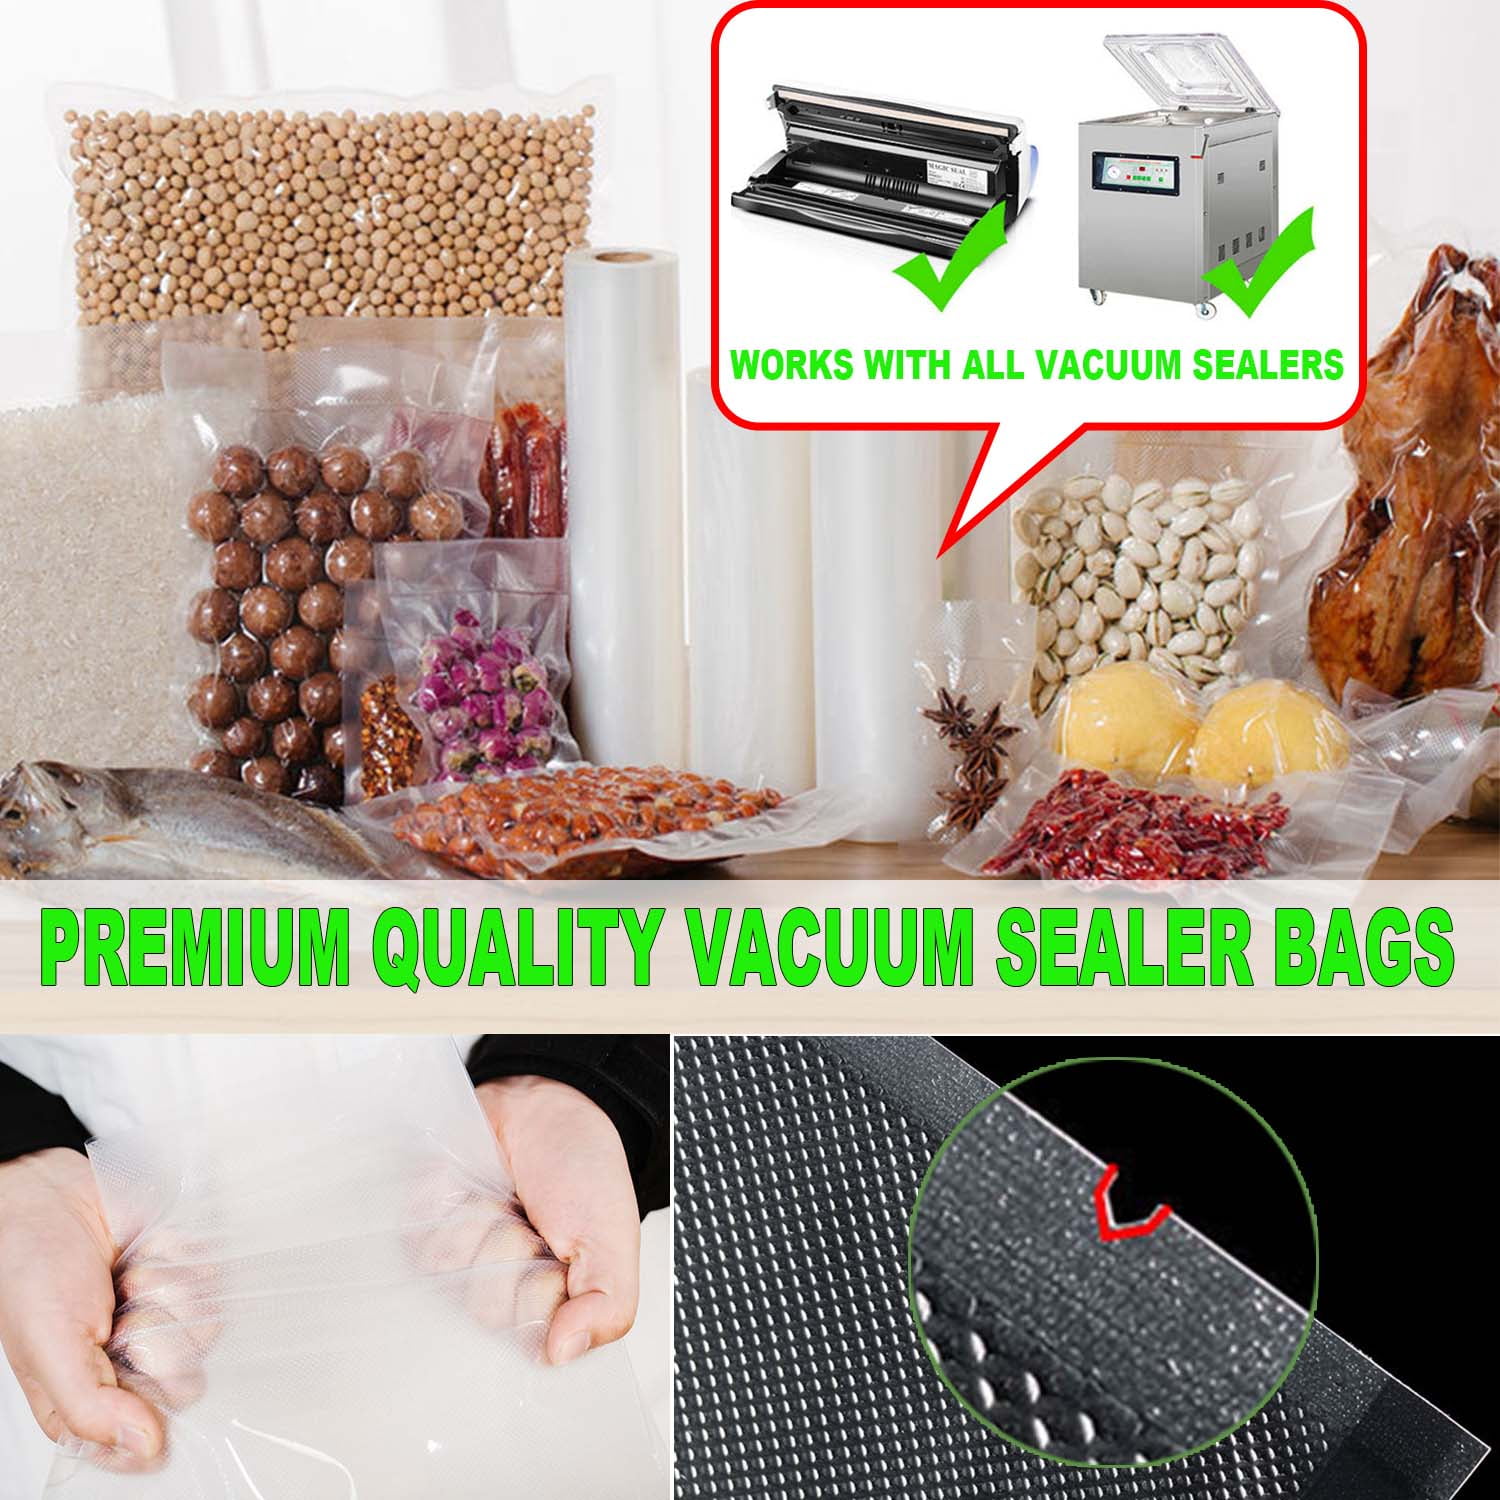 KOIOS Vacuum Sealer Bags for Food Vacuum Sealer Bags Rolls,8"